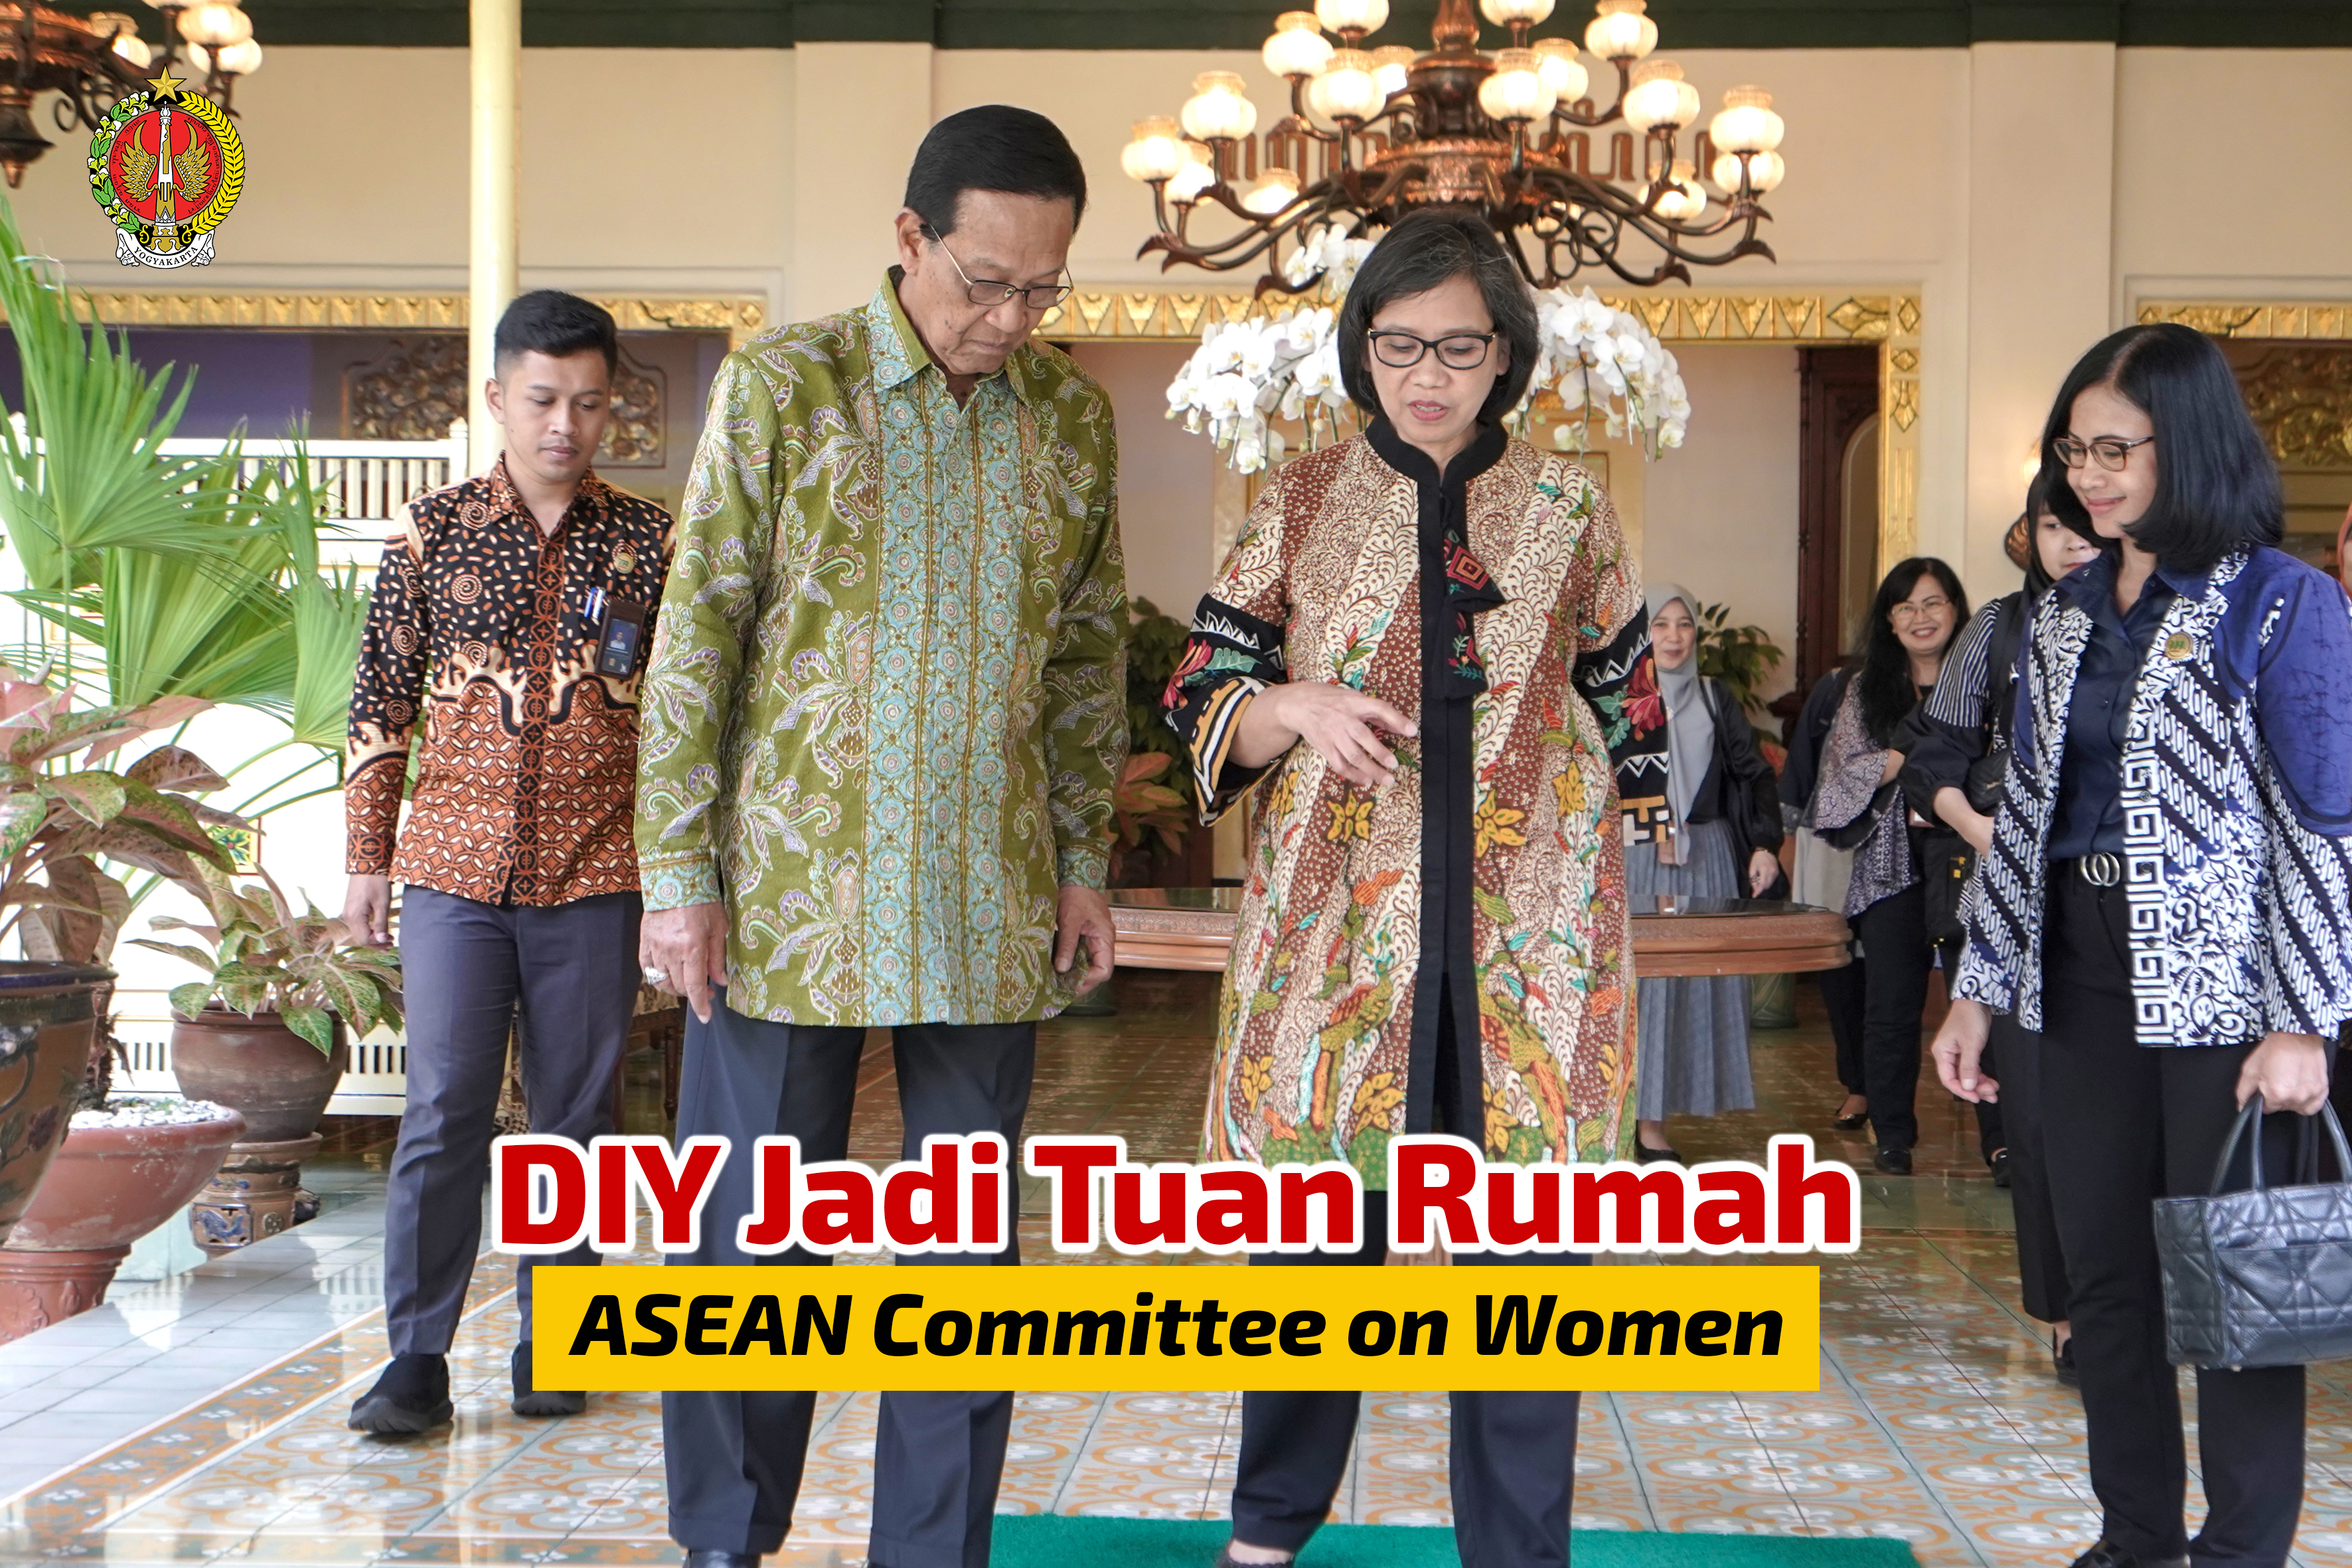  DIY Jadi Tuan Rumah ASEAN Committee on Women